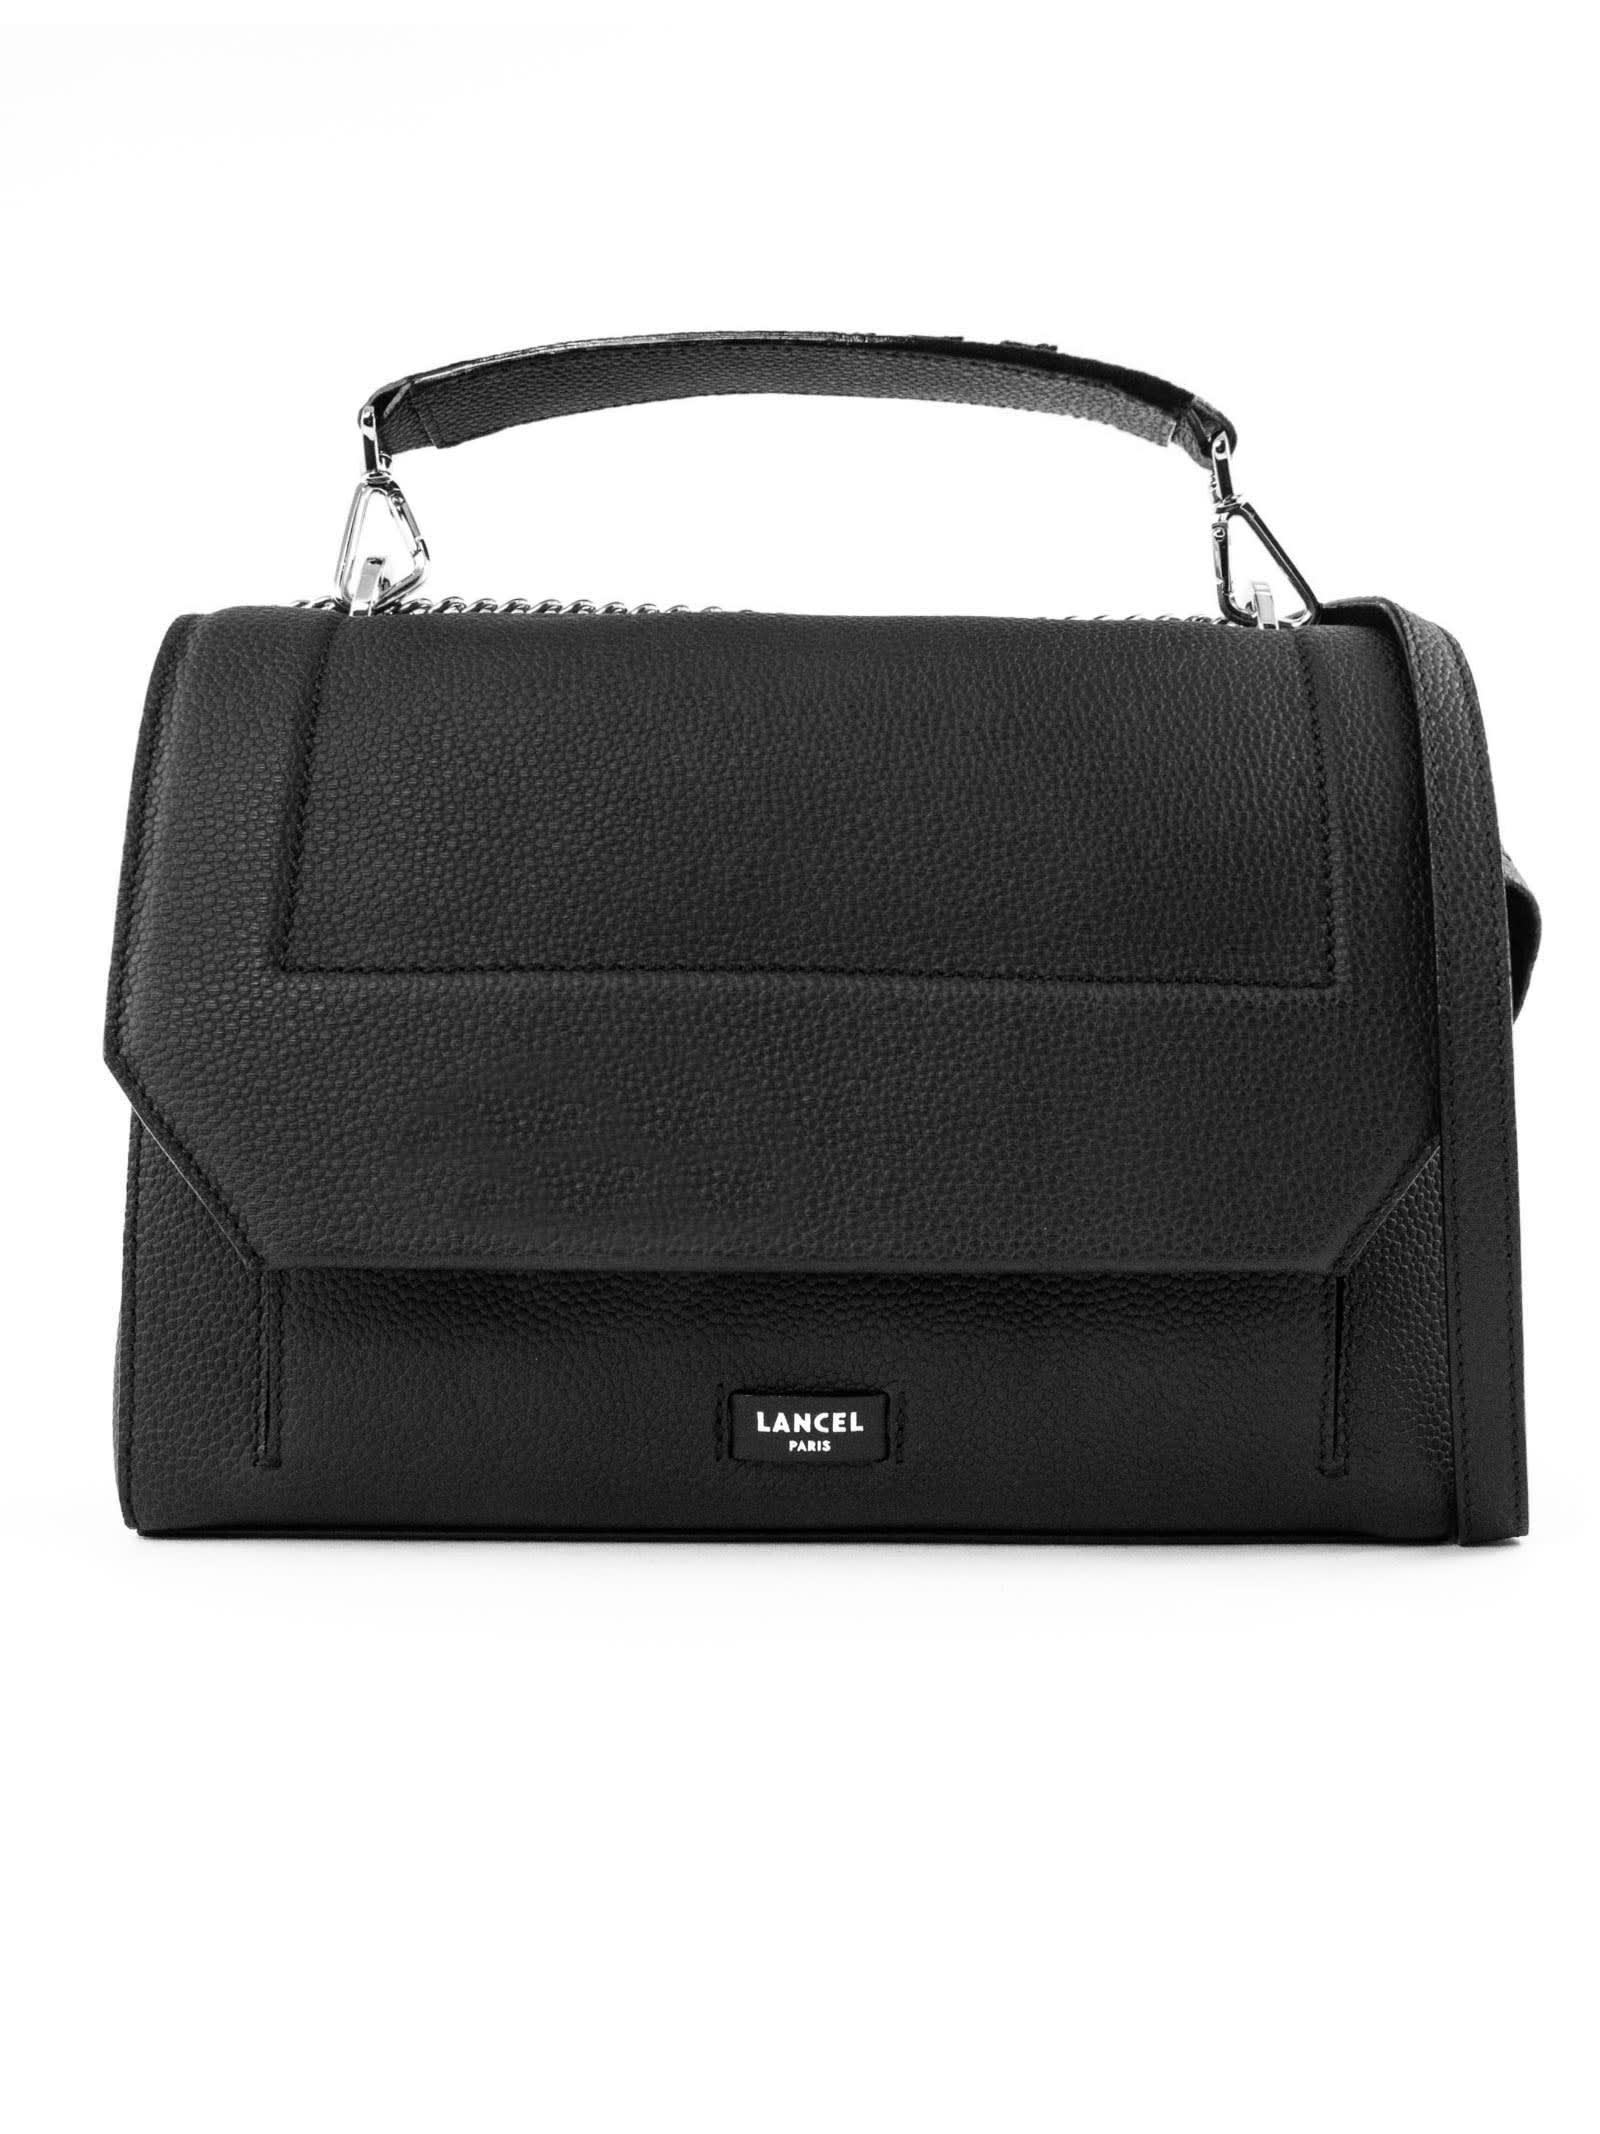 Lancel Black Leather Shoulder Bag